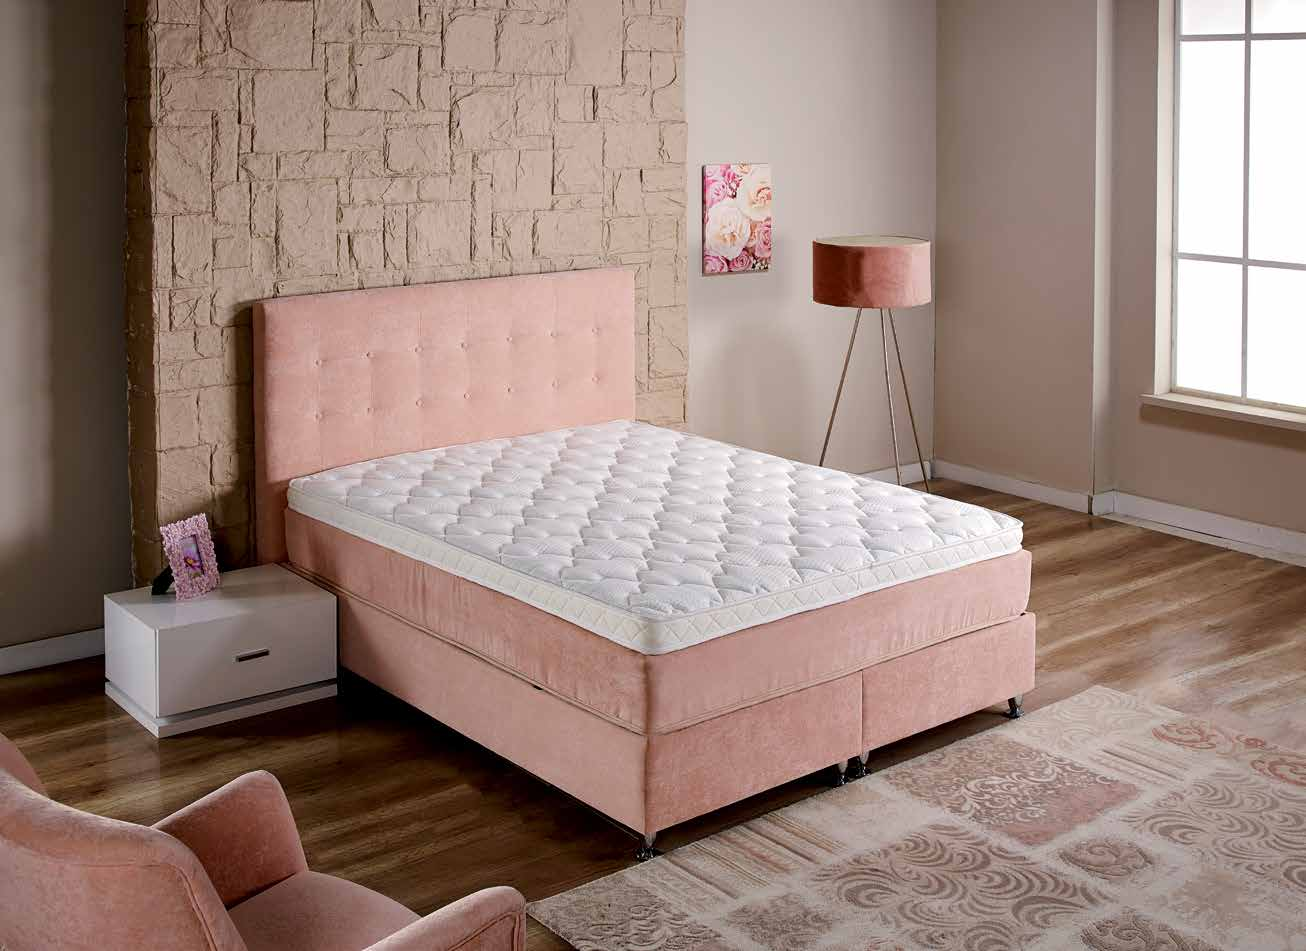 Y 45 SMART&SOFT FULL ORTOPEDİK EKSTRA YUMUŞAK PED Smart&Soft yatak kumaşları ideal bir uyku yüzeyi sunmak amacıyla geliştirilmiştir.